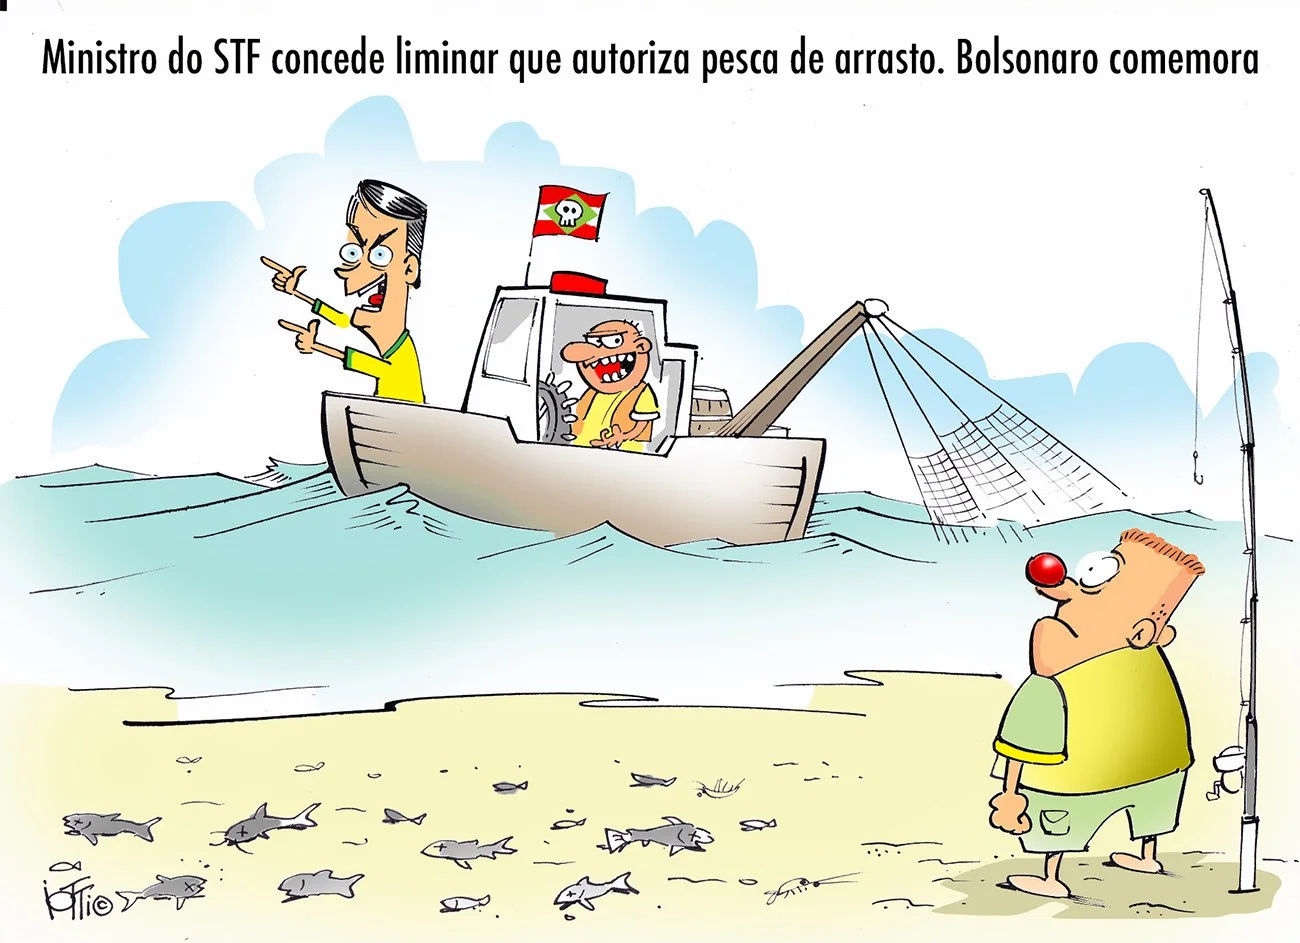 Ilustração alusiva à Pesca de arrasto no litoral gaúcho